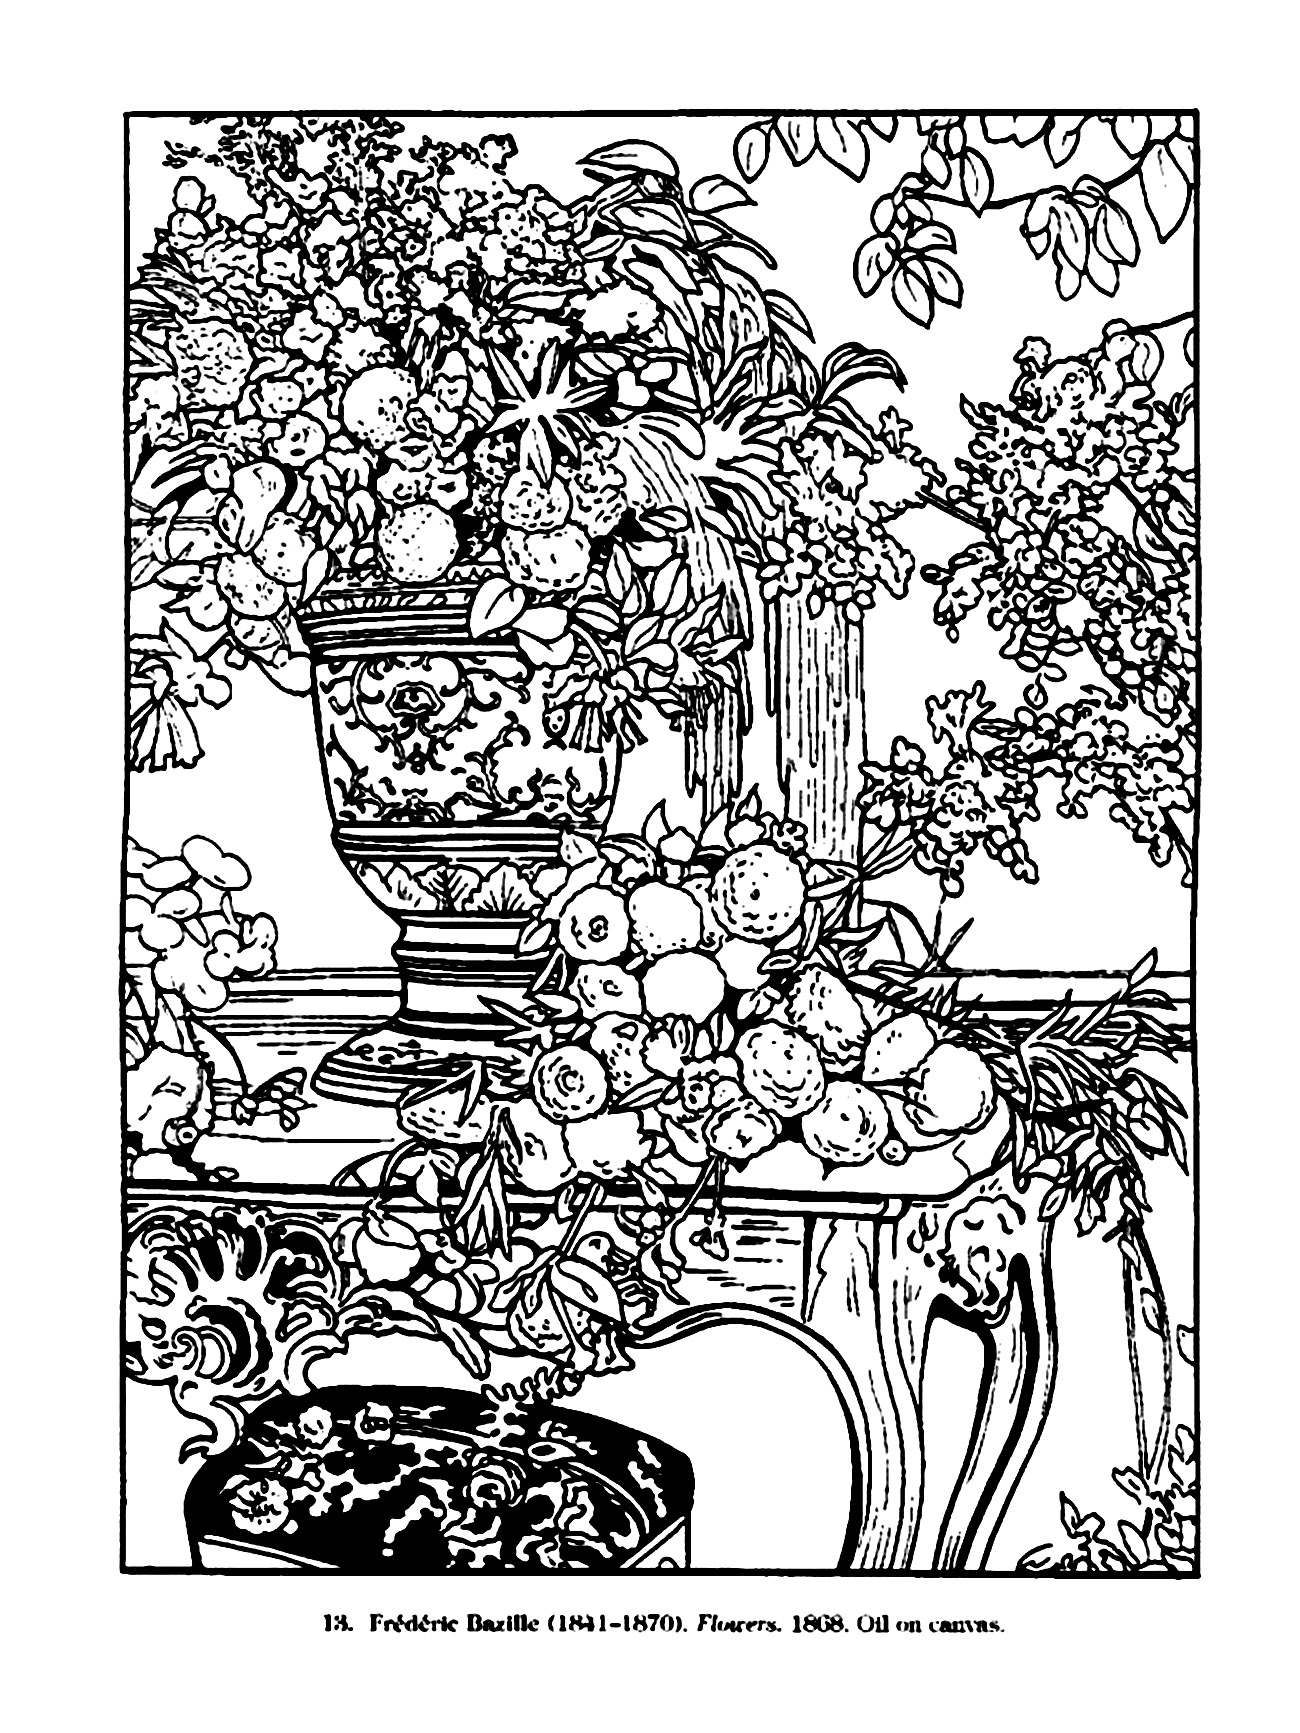 Desenho de Frederic Bazille (1841-1870), representando as Flores num vaso